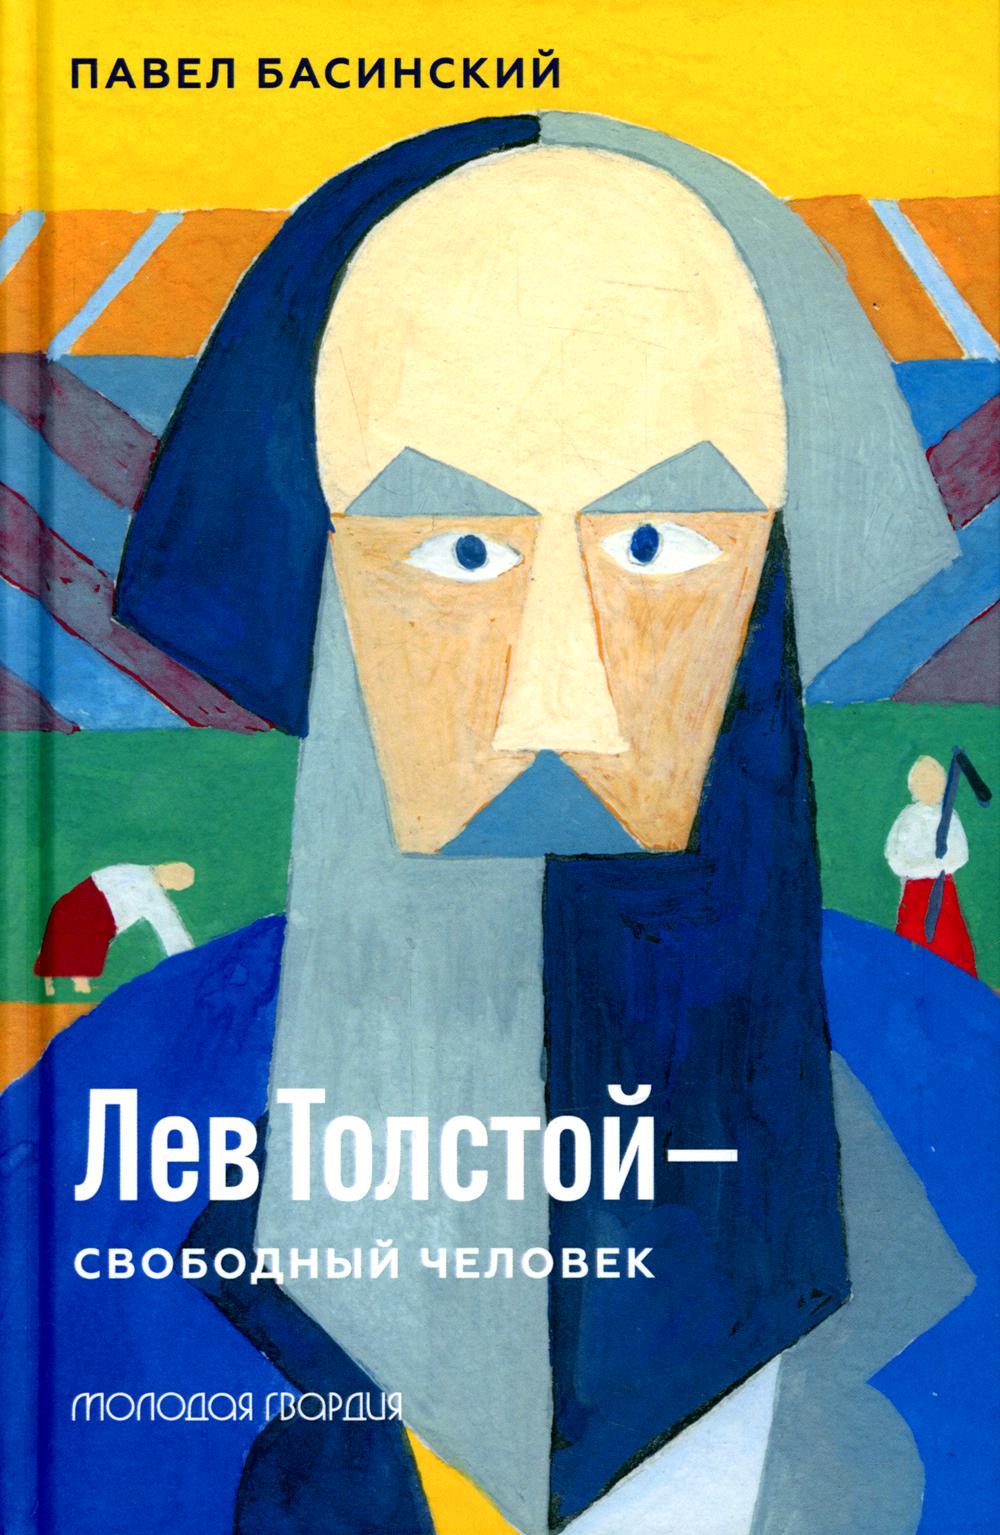 Лев Толстой - свободный человек